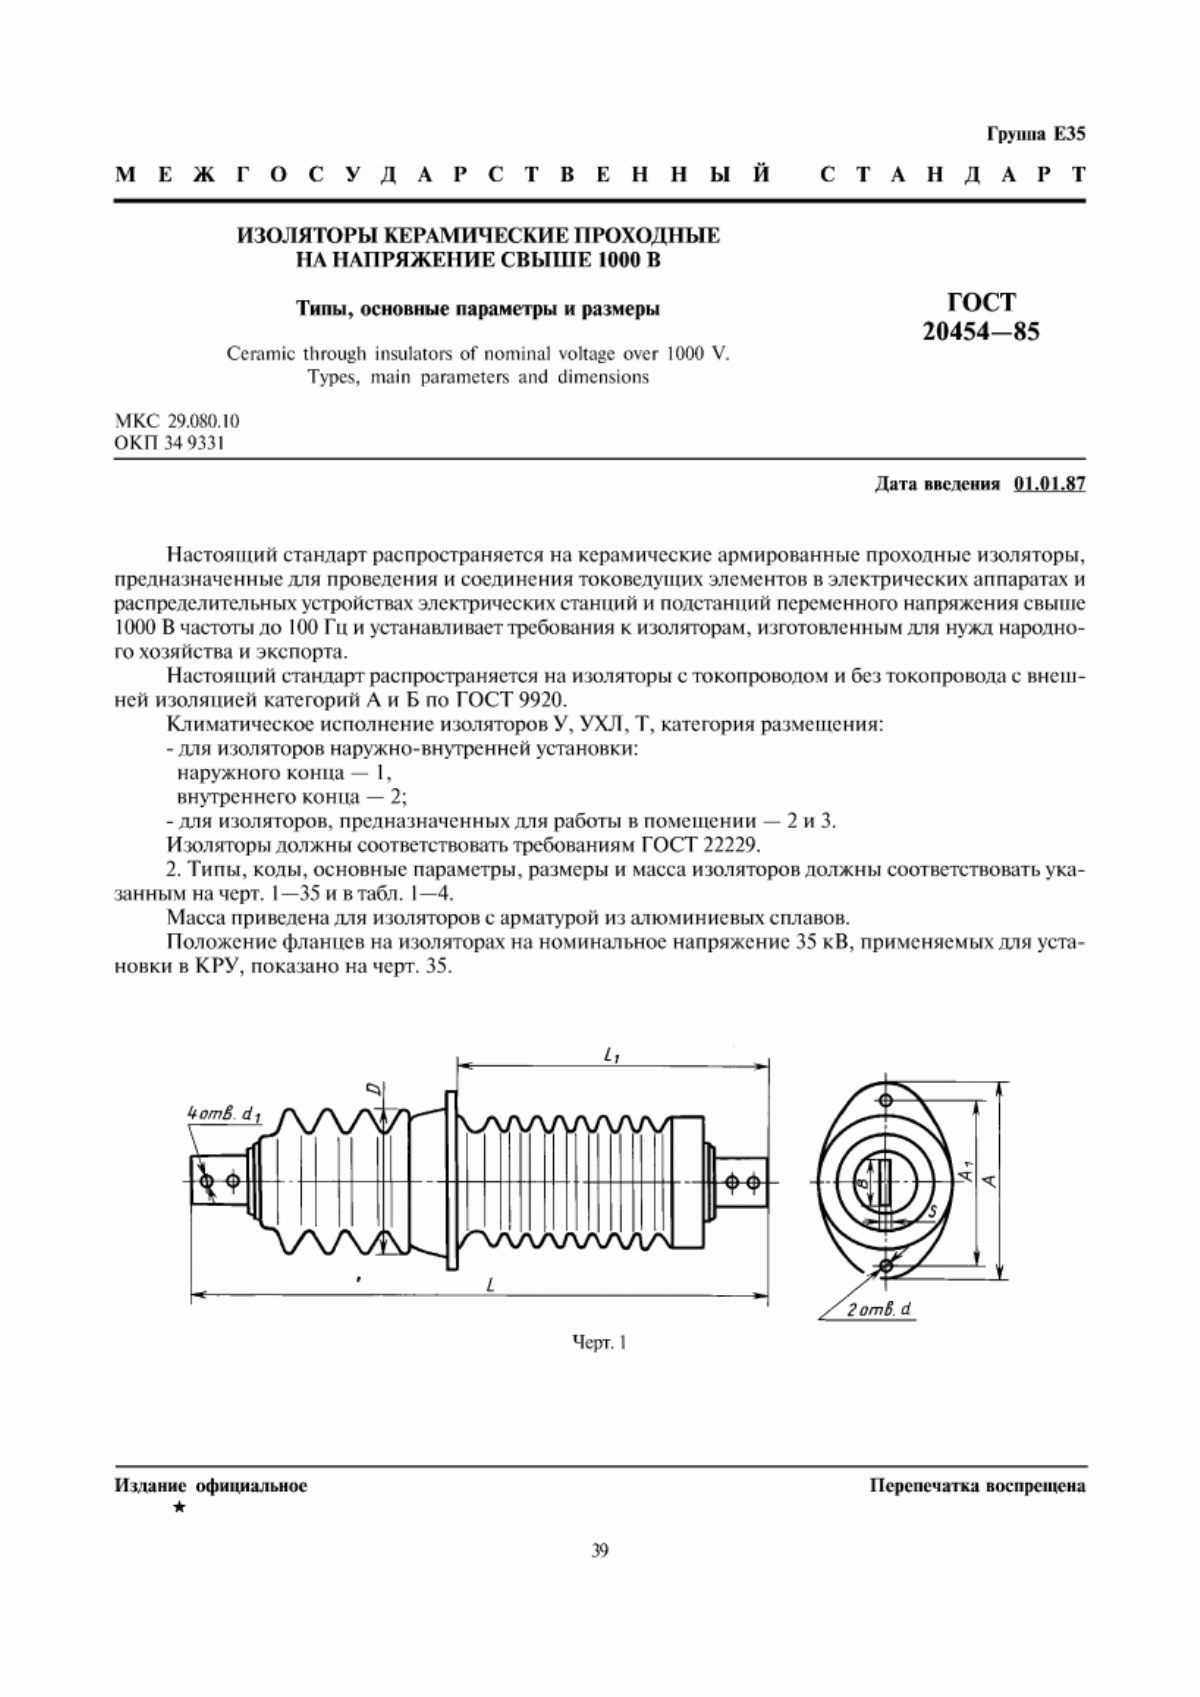 ГОСТ 20454-85 Изоляторы керамические проходные на напряжение свыше 1000 В. Типы, основные параметры и размеры